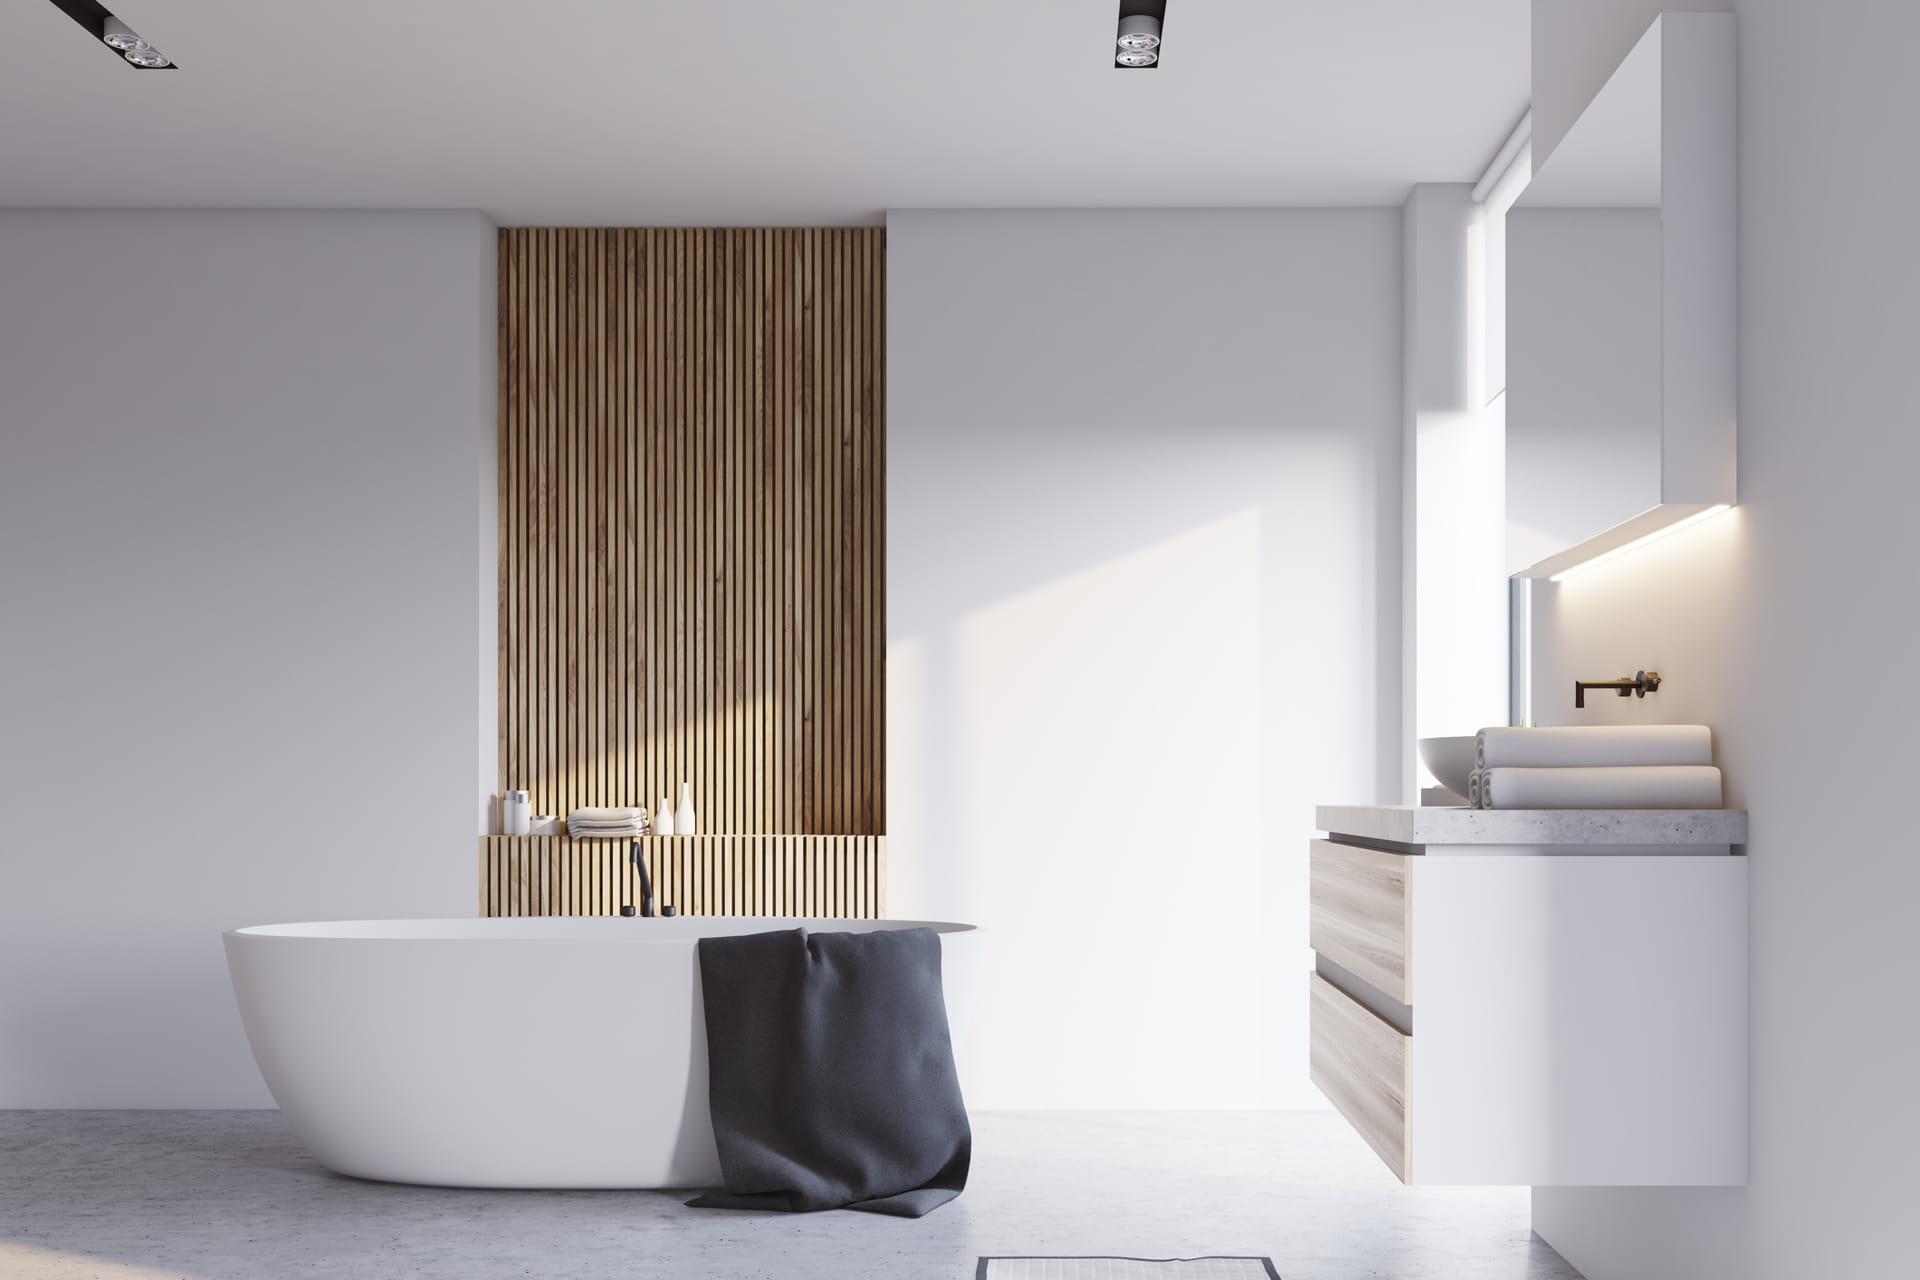 Modernt badrum klätt med vit microcement